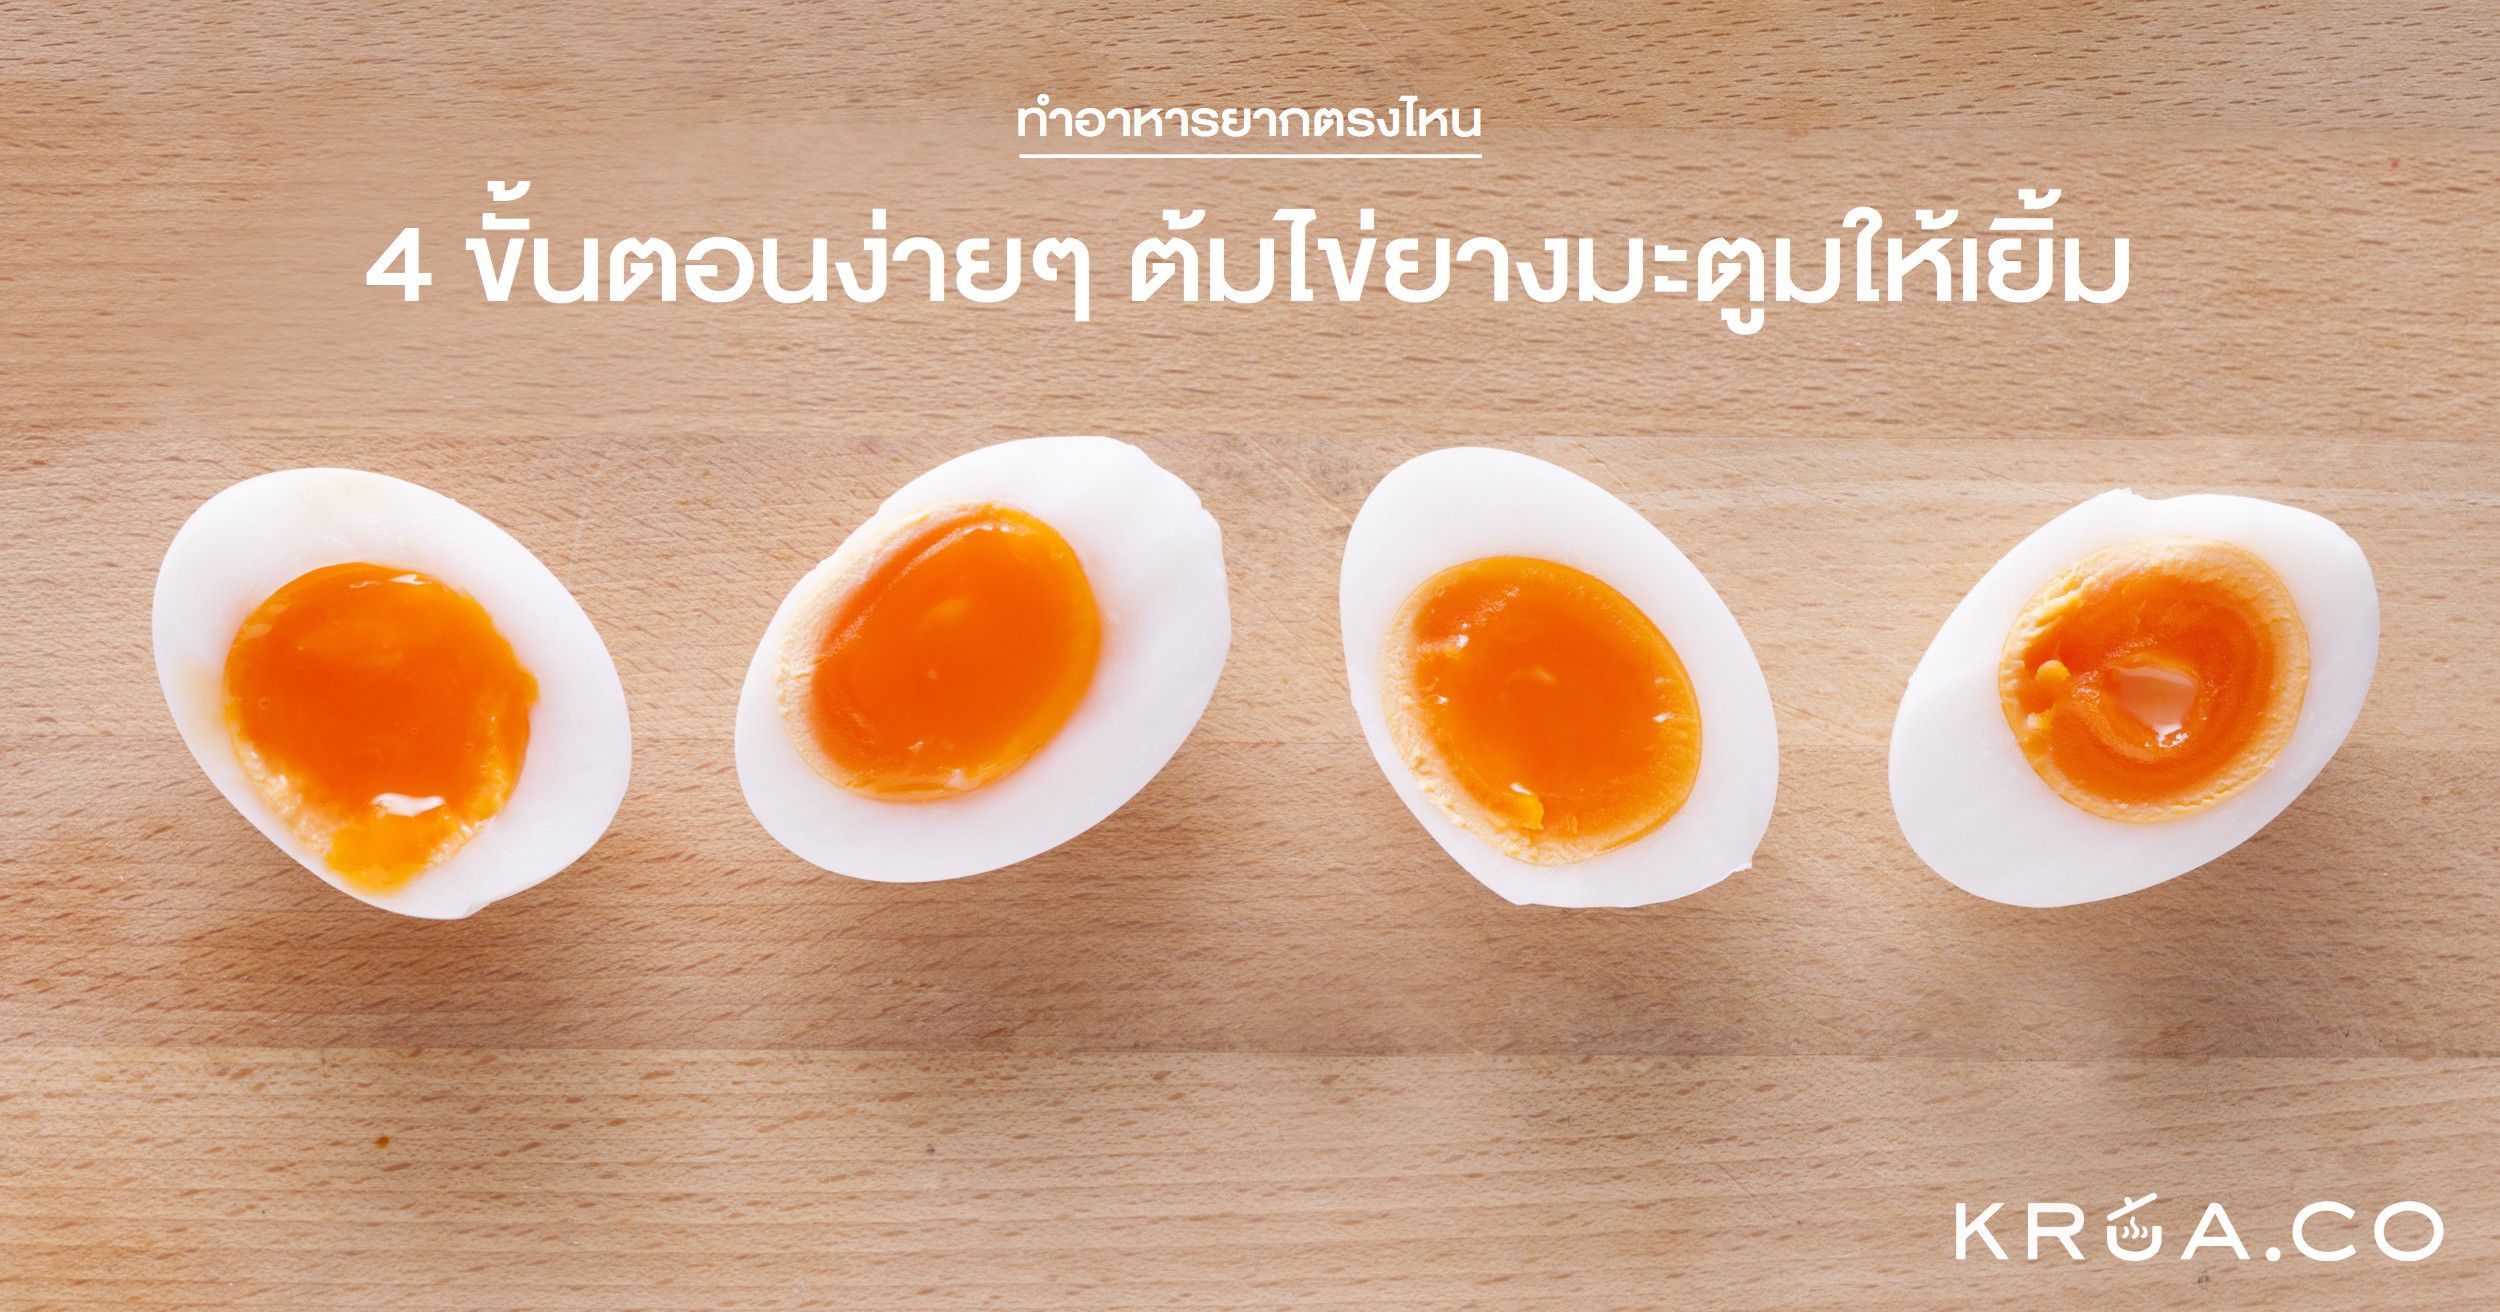 4 ขั้นตอนง่ายๆ ต้มไข่ยางมะตูมให้เยิ้ม by KRUA.CO